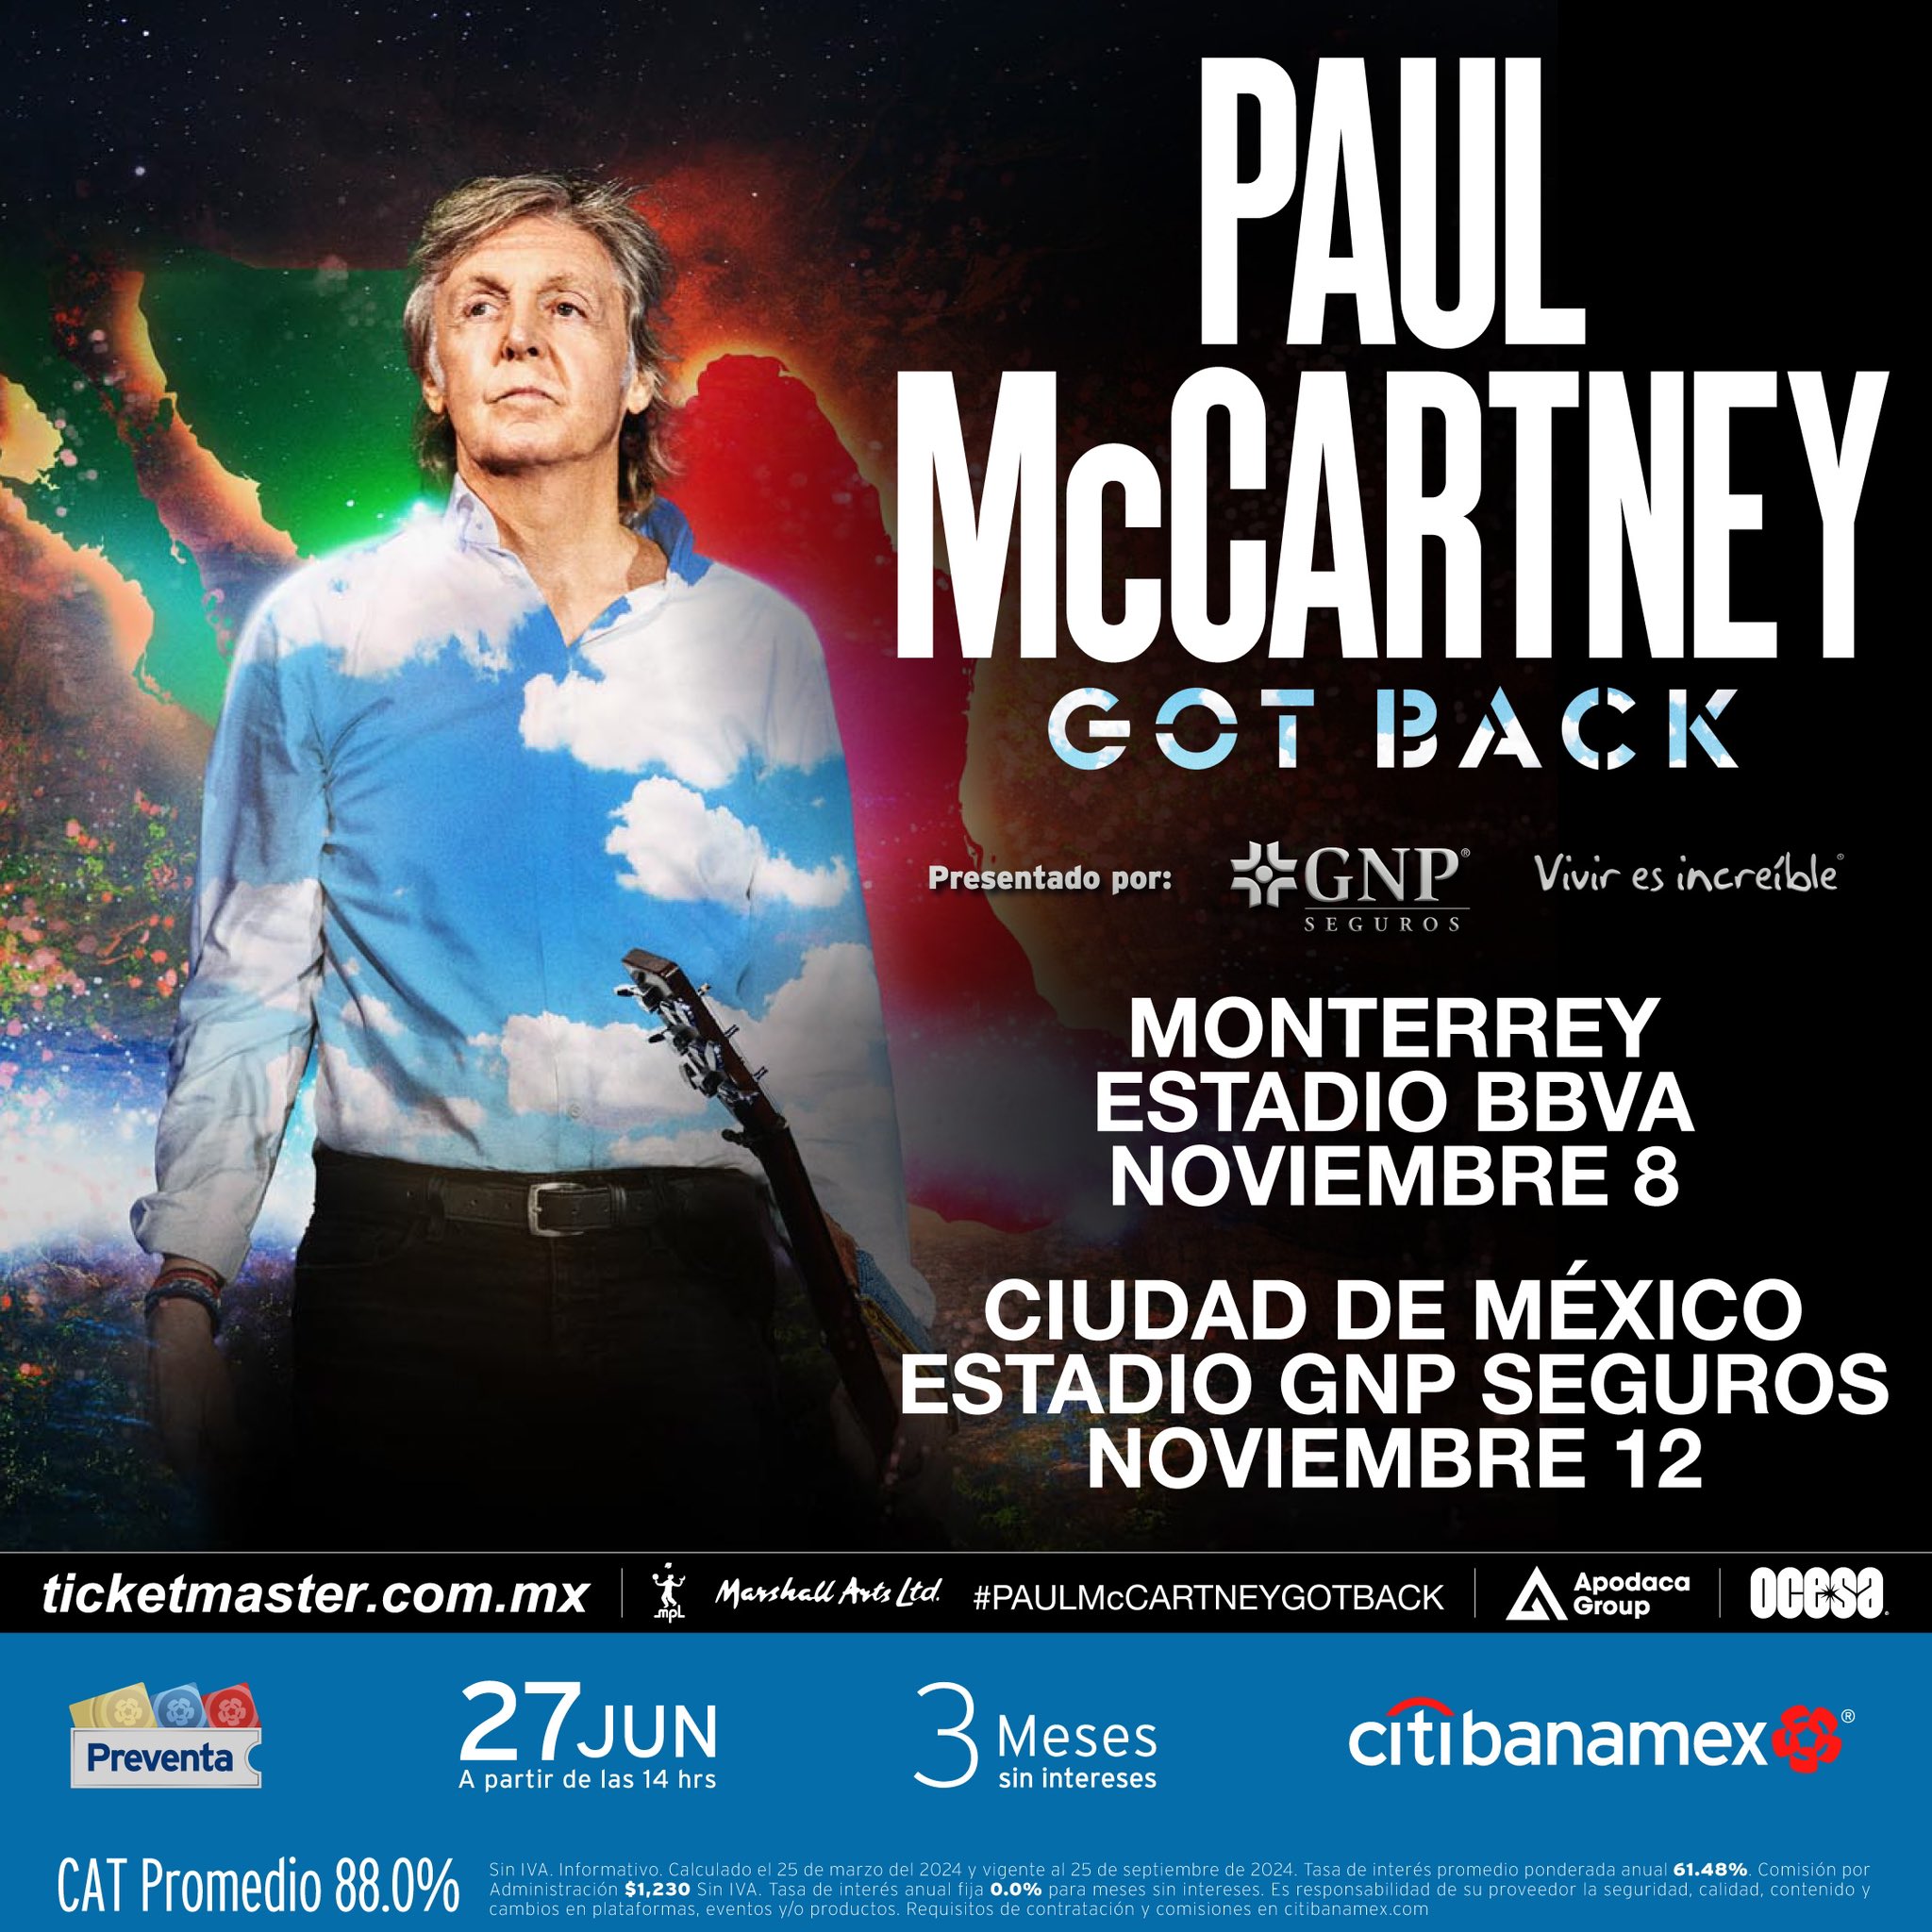 Sir Paul McCartney regresa a México con su gira Got Back Tour